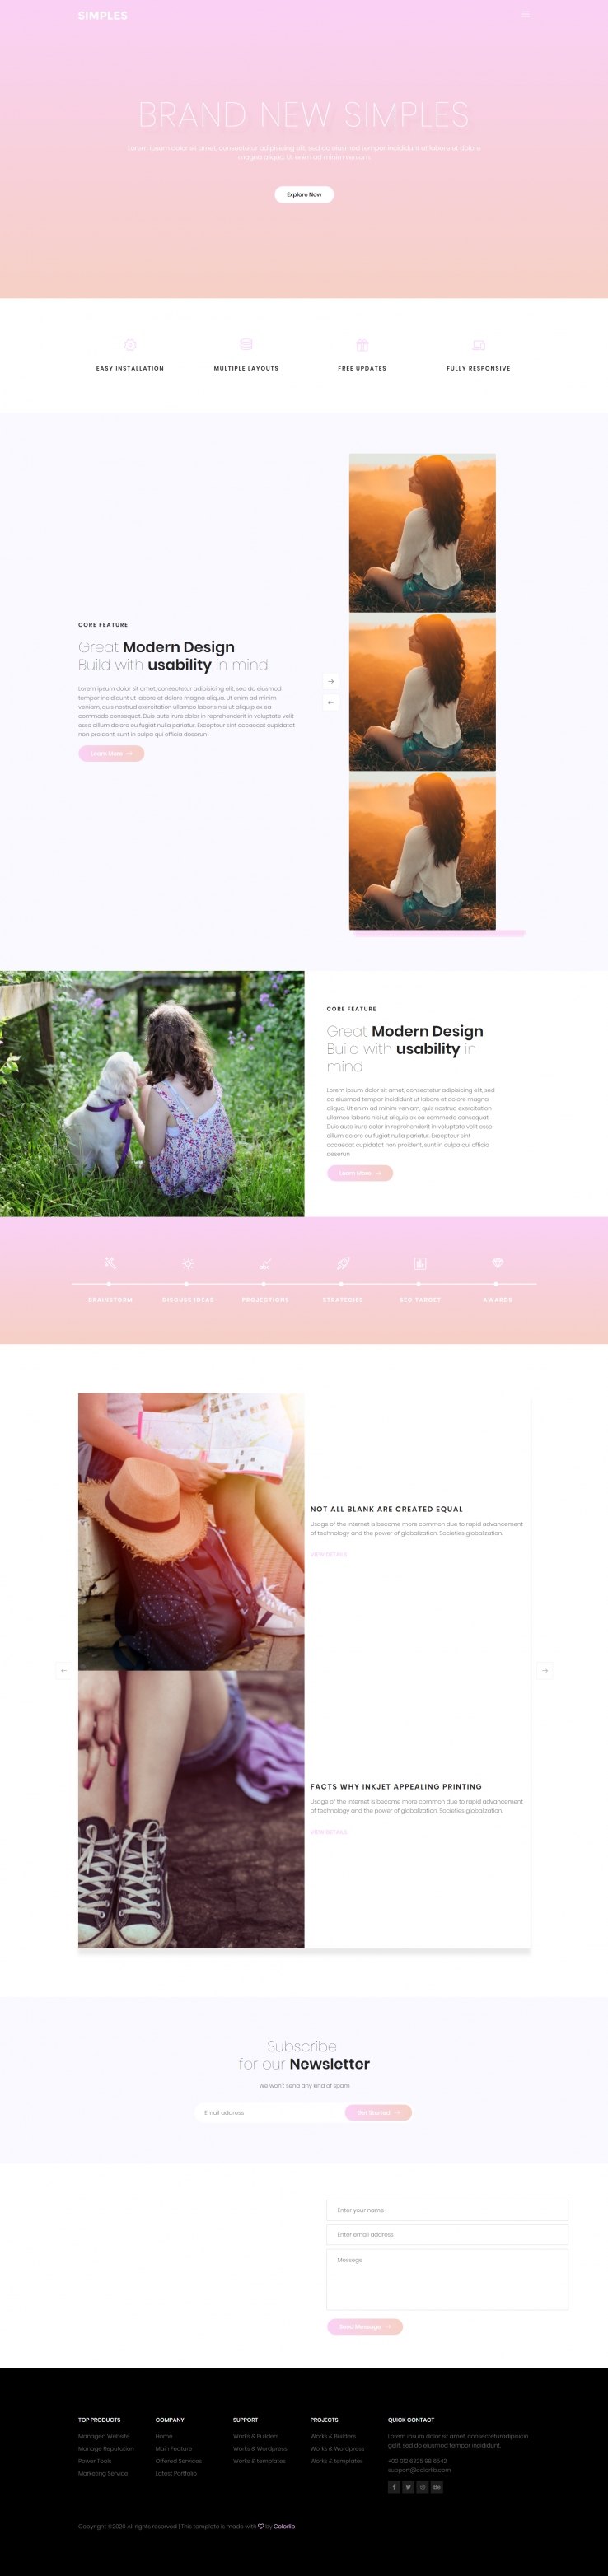 粉色欧美风格响应式品牌展示网页模板